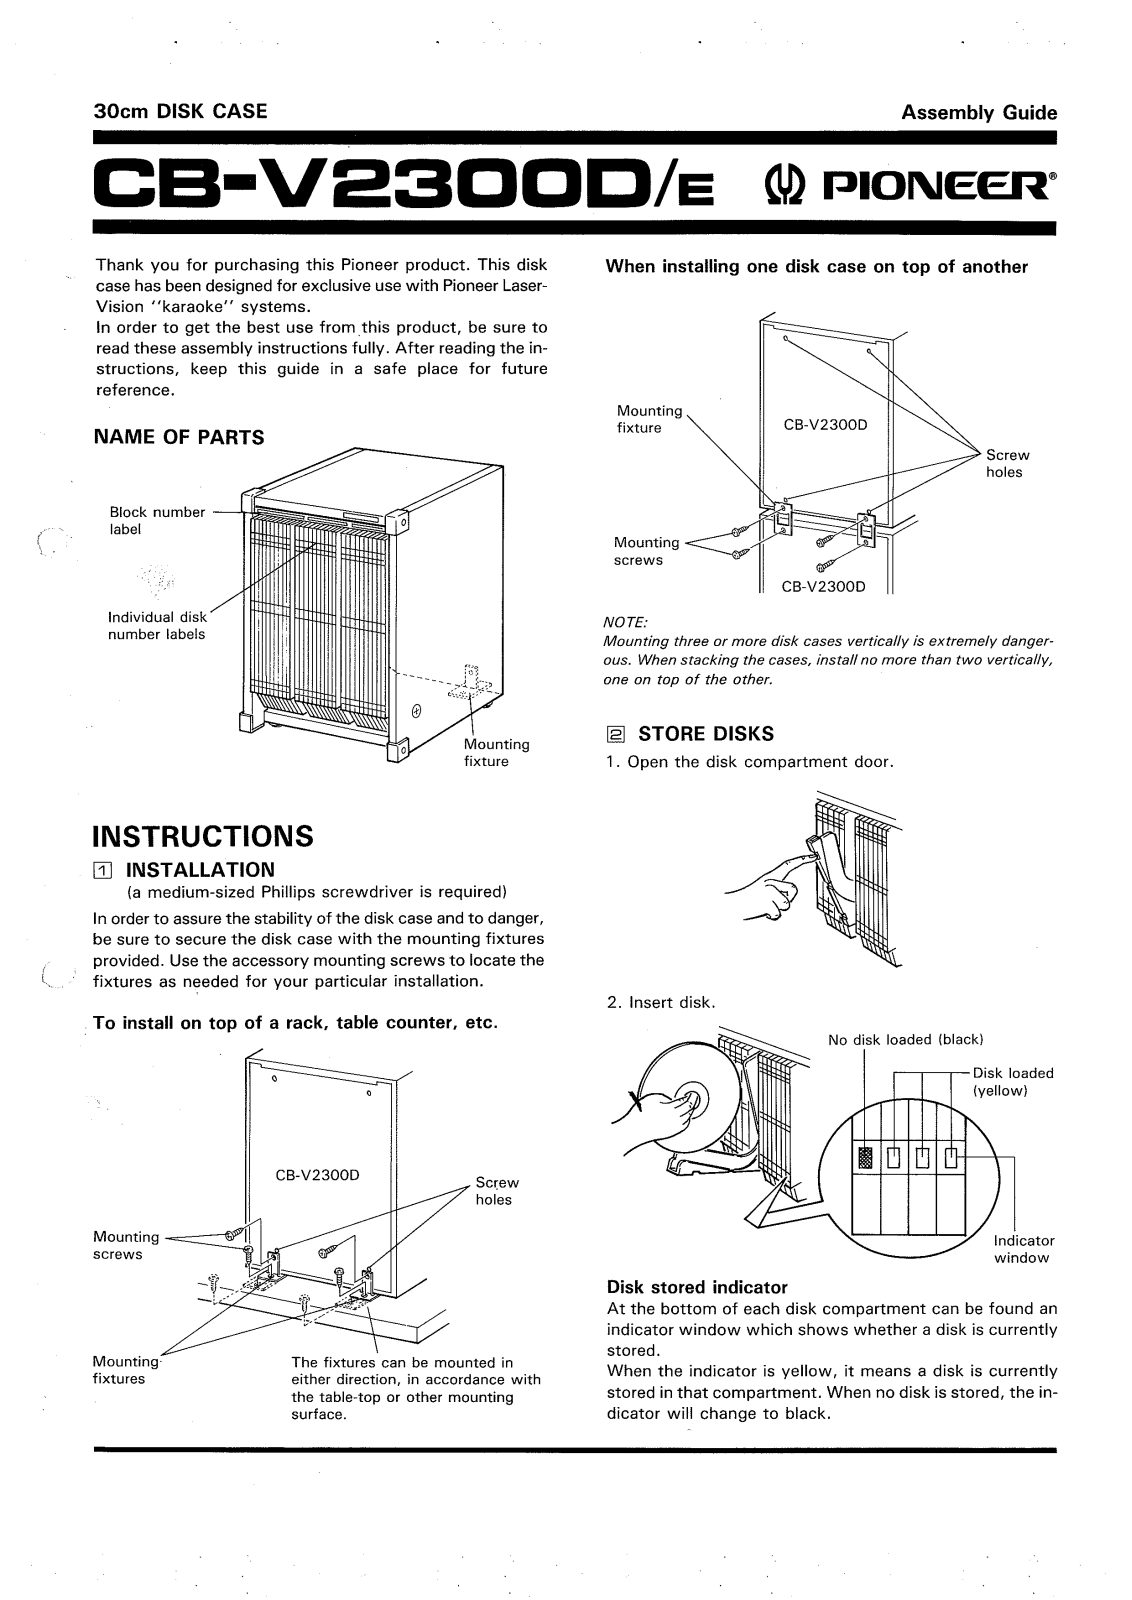 Pioneer CB-V2300 Manual